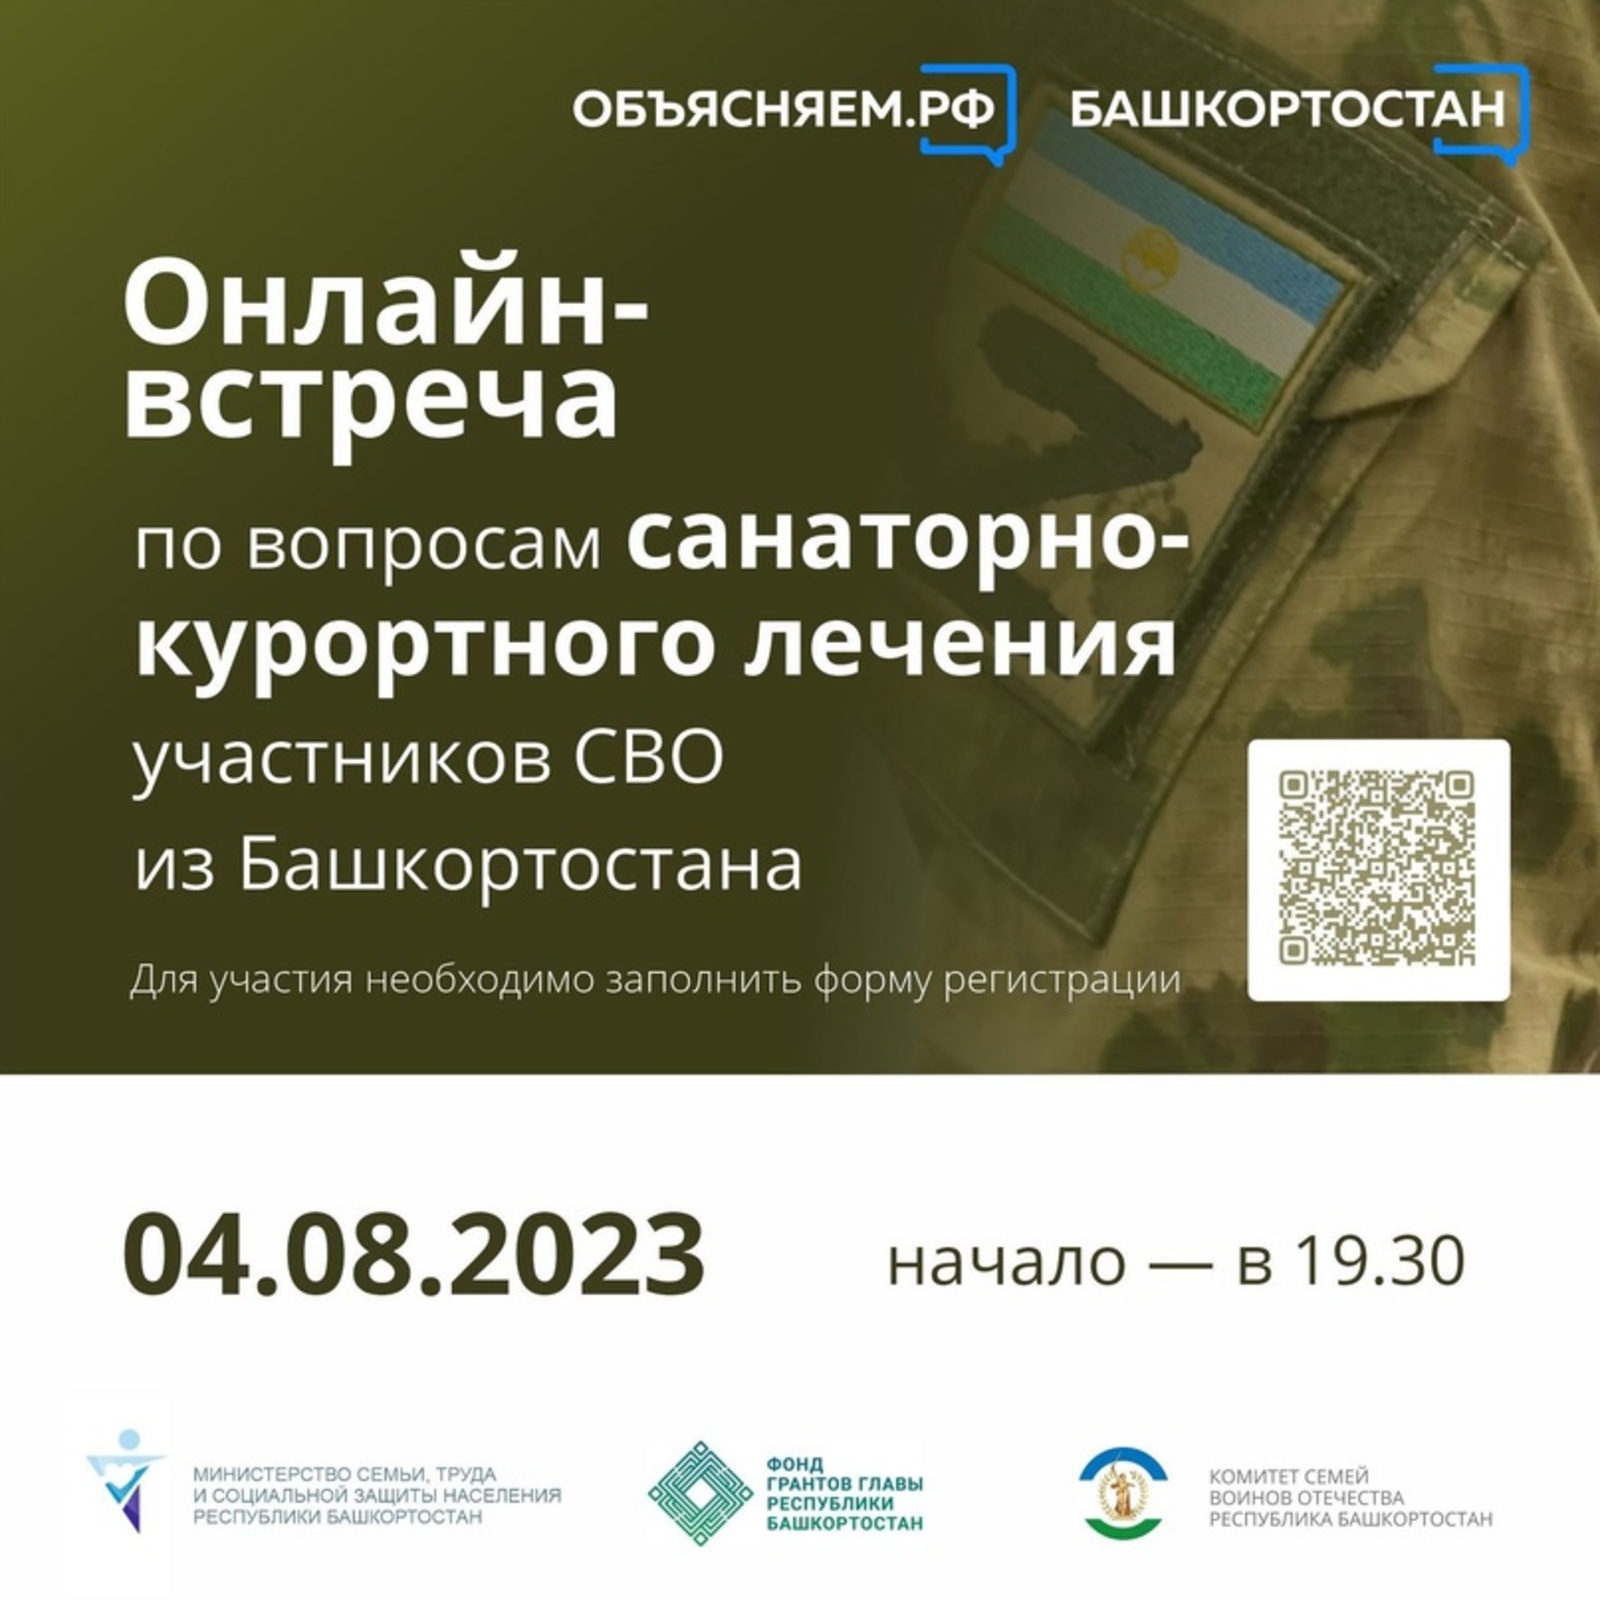 Жители Башкортостана могут получить ответы на вопросы про санаторно-курортное лечение для участников СВО на онлайн-встрече, которая состоится 4 августа